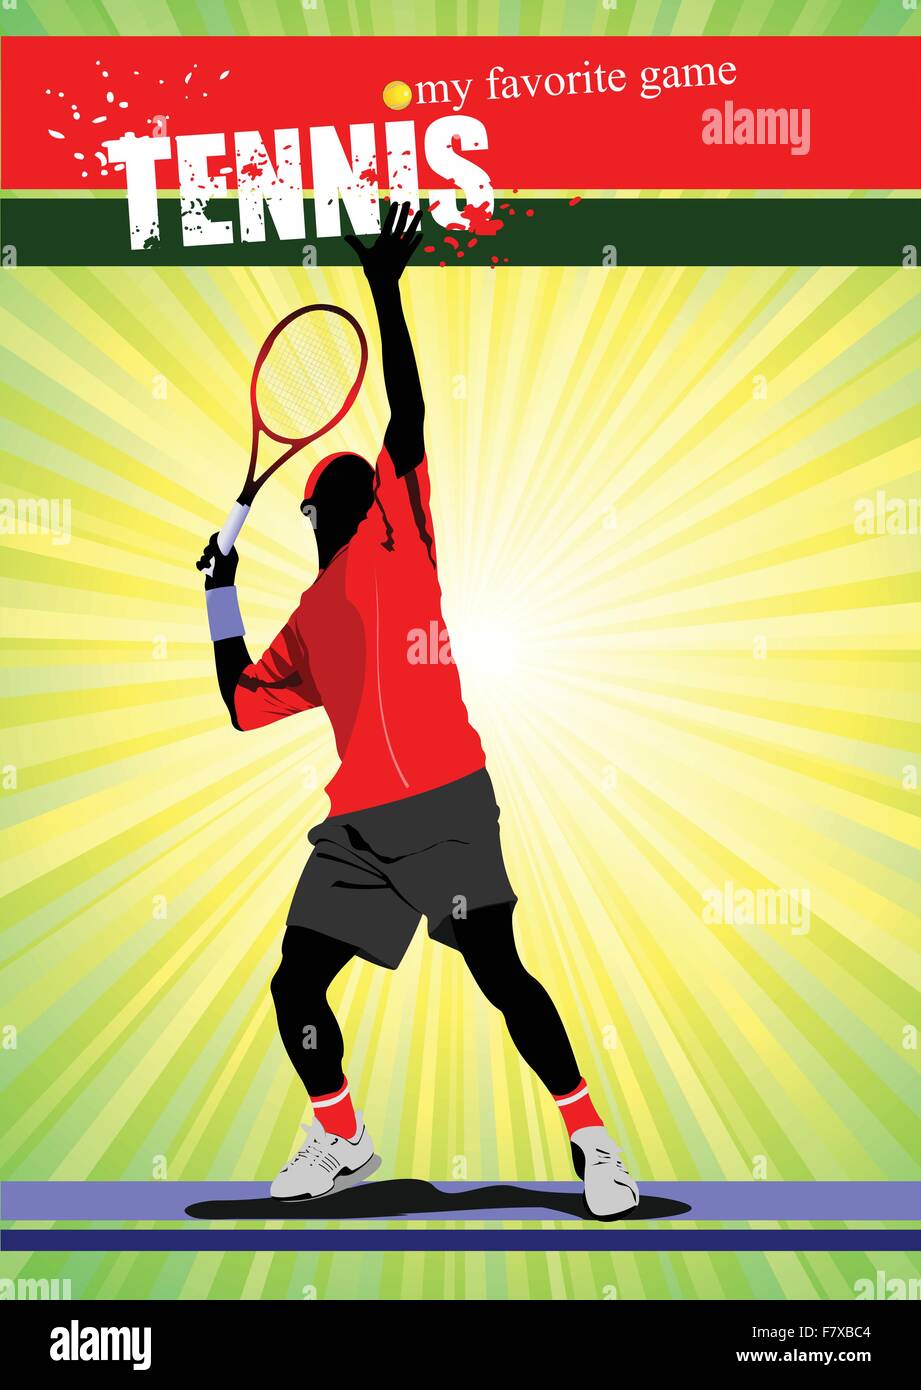 Tennis uomo poster. Il mio gioco preferito. Illustrazione Vettoriale Illustrazione Vettoriale